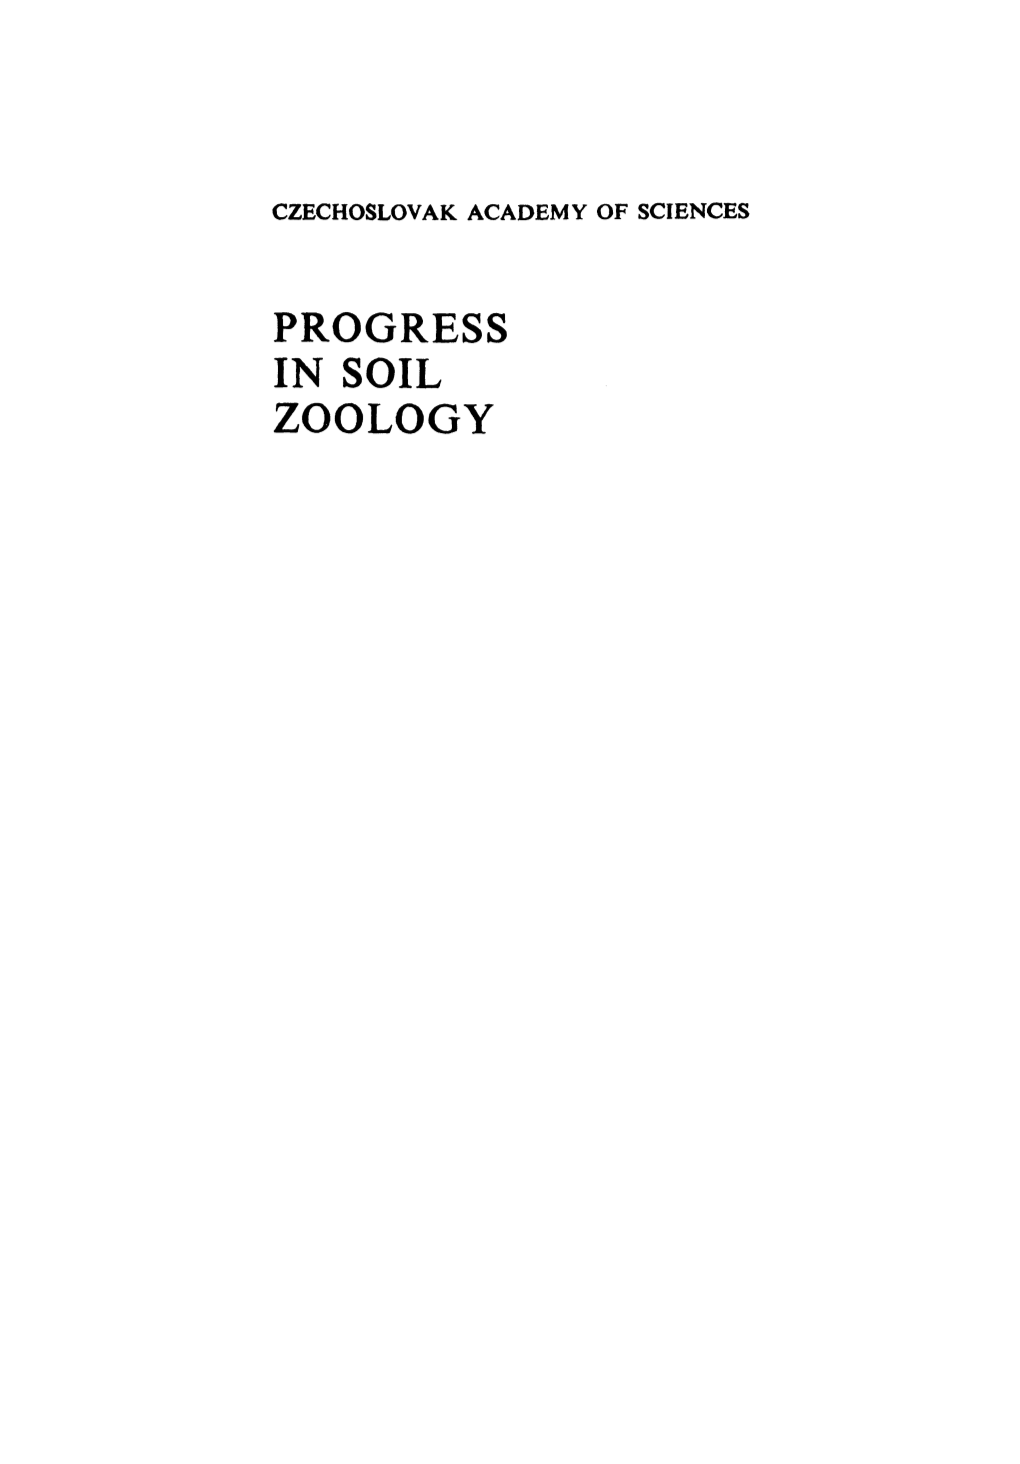 Progress in Soil Zoology Czechoslovak Academy of Sciences